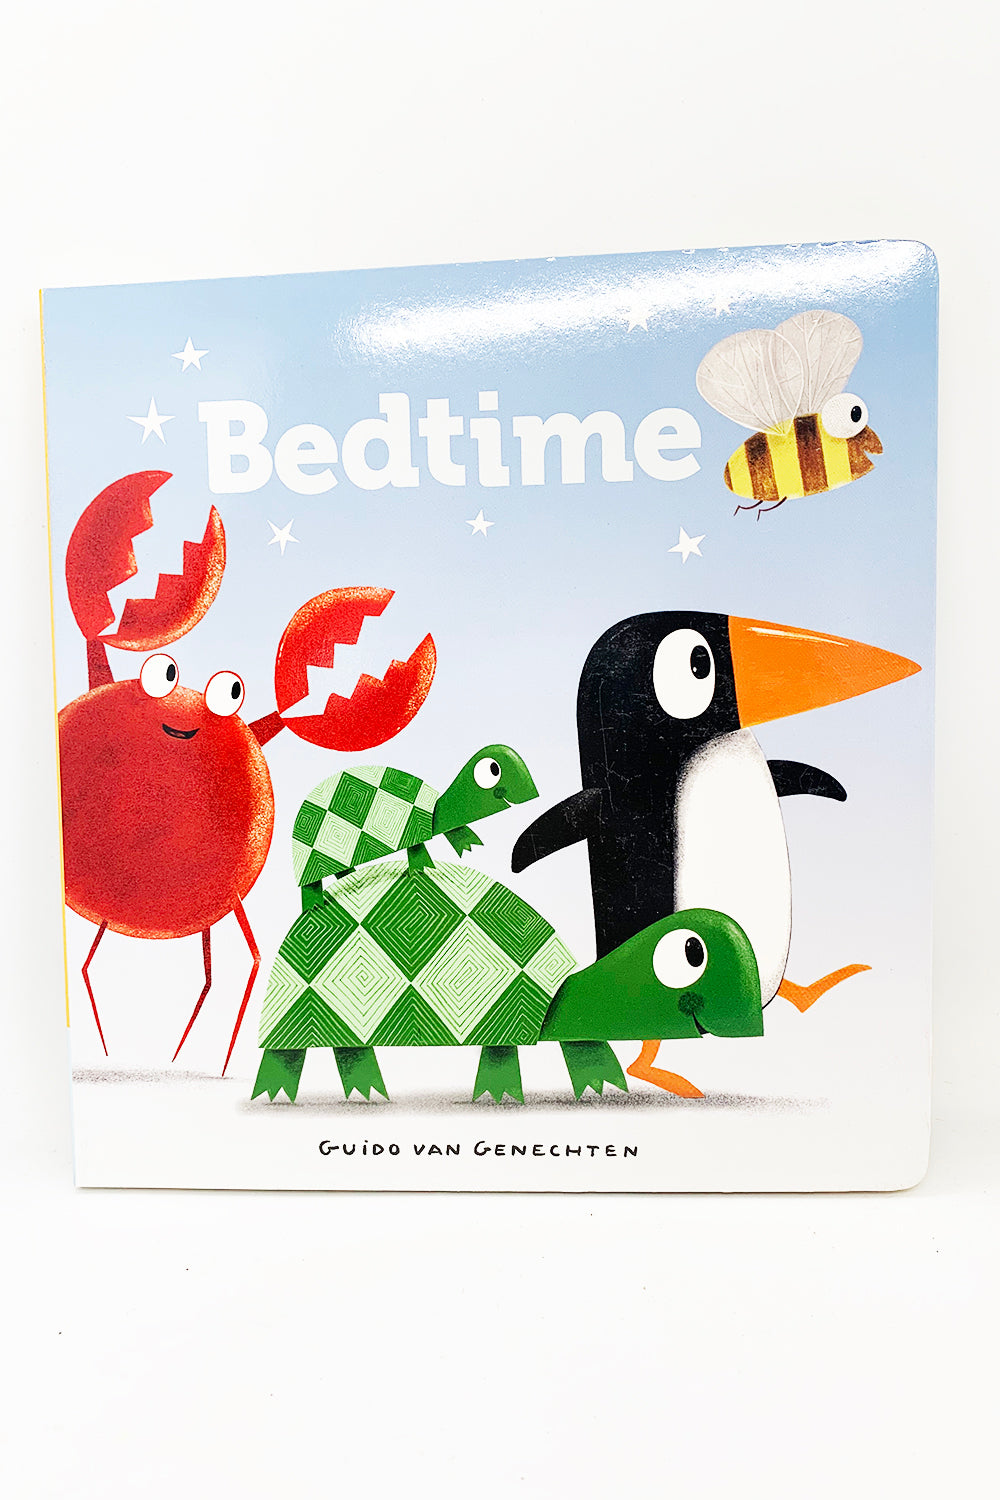 Bedtime Book